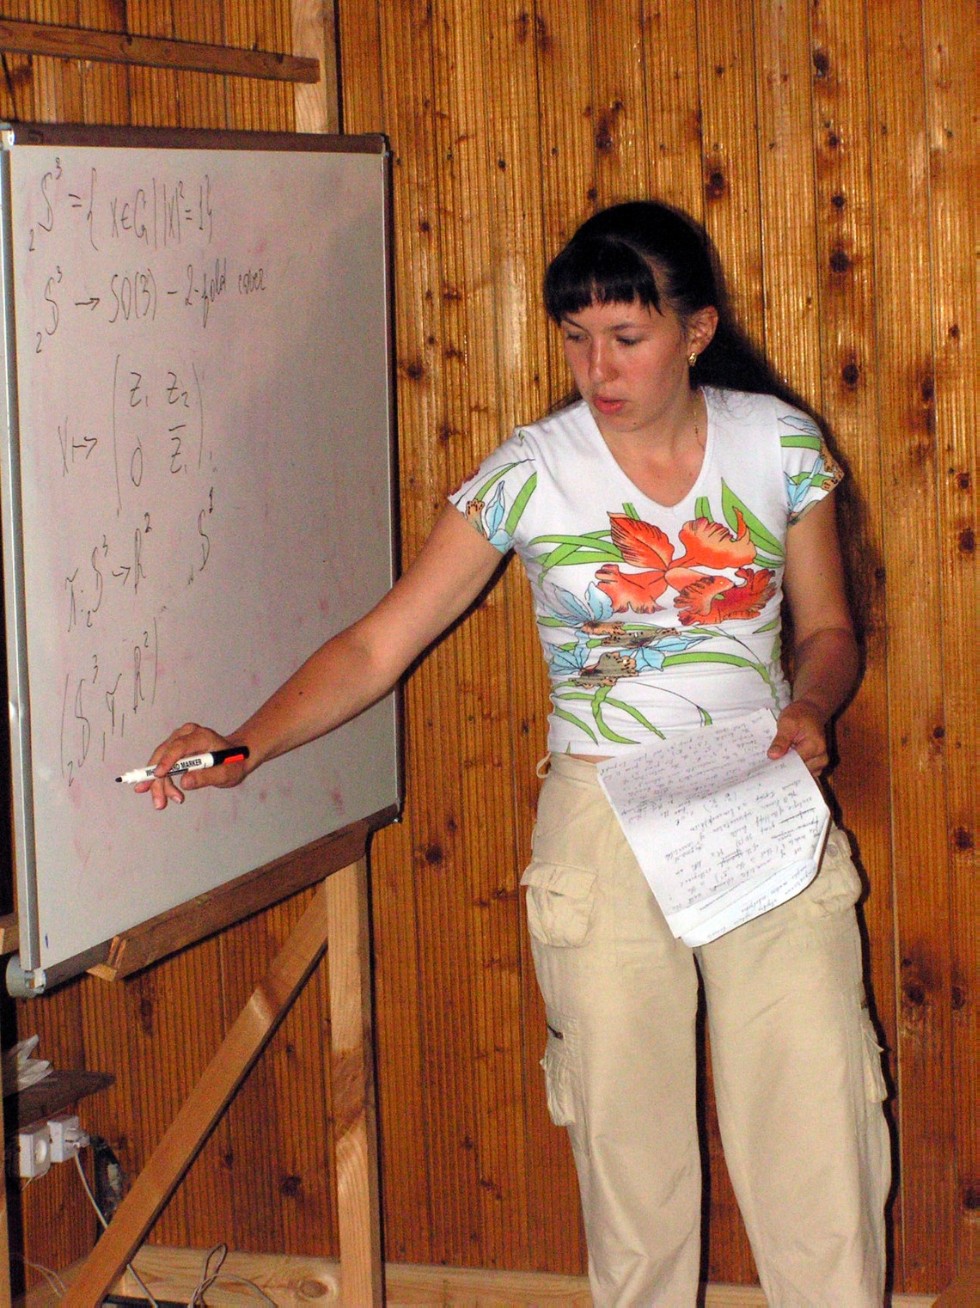   2007 / Petrov School 2007